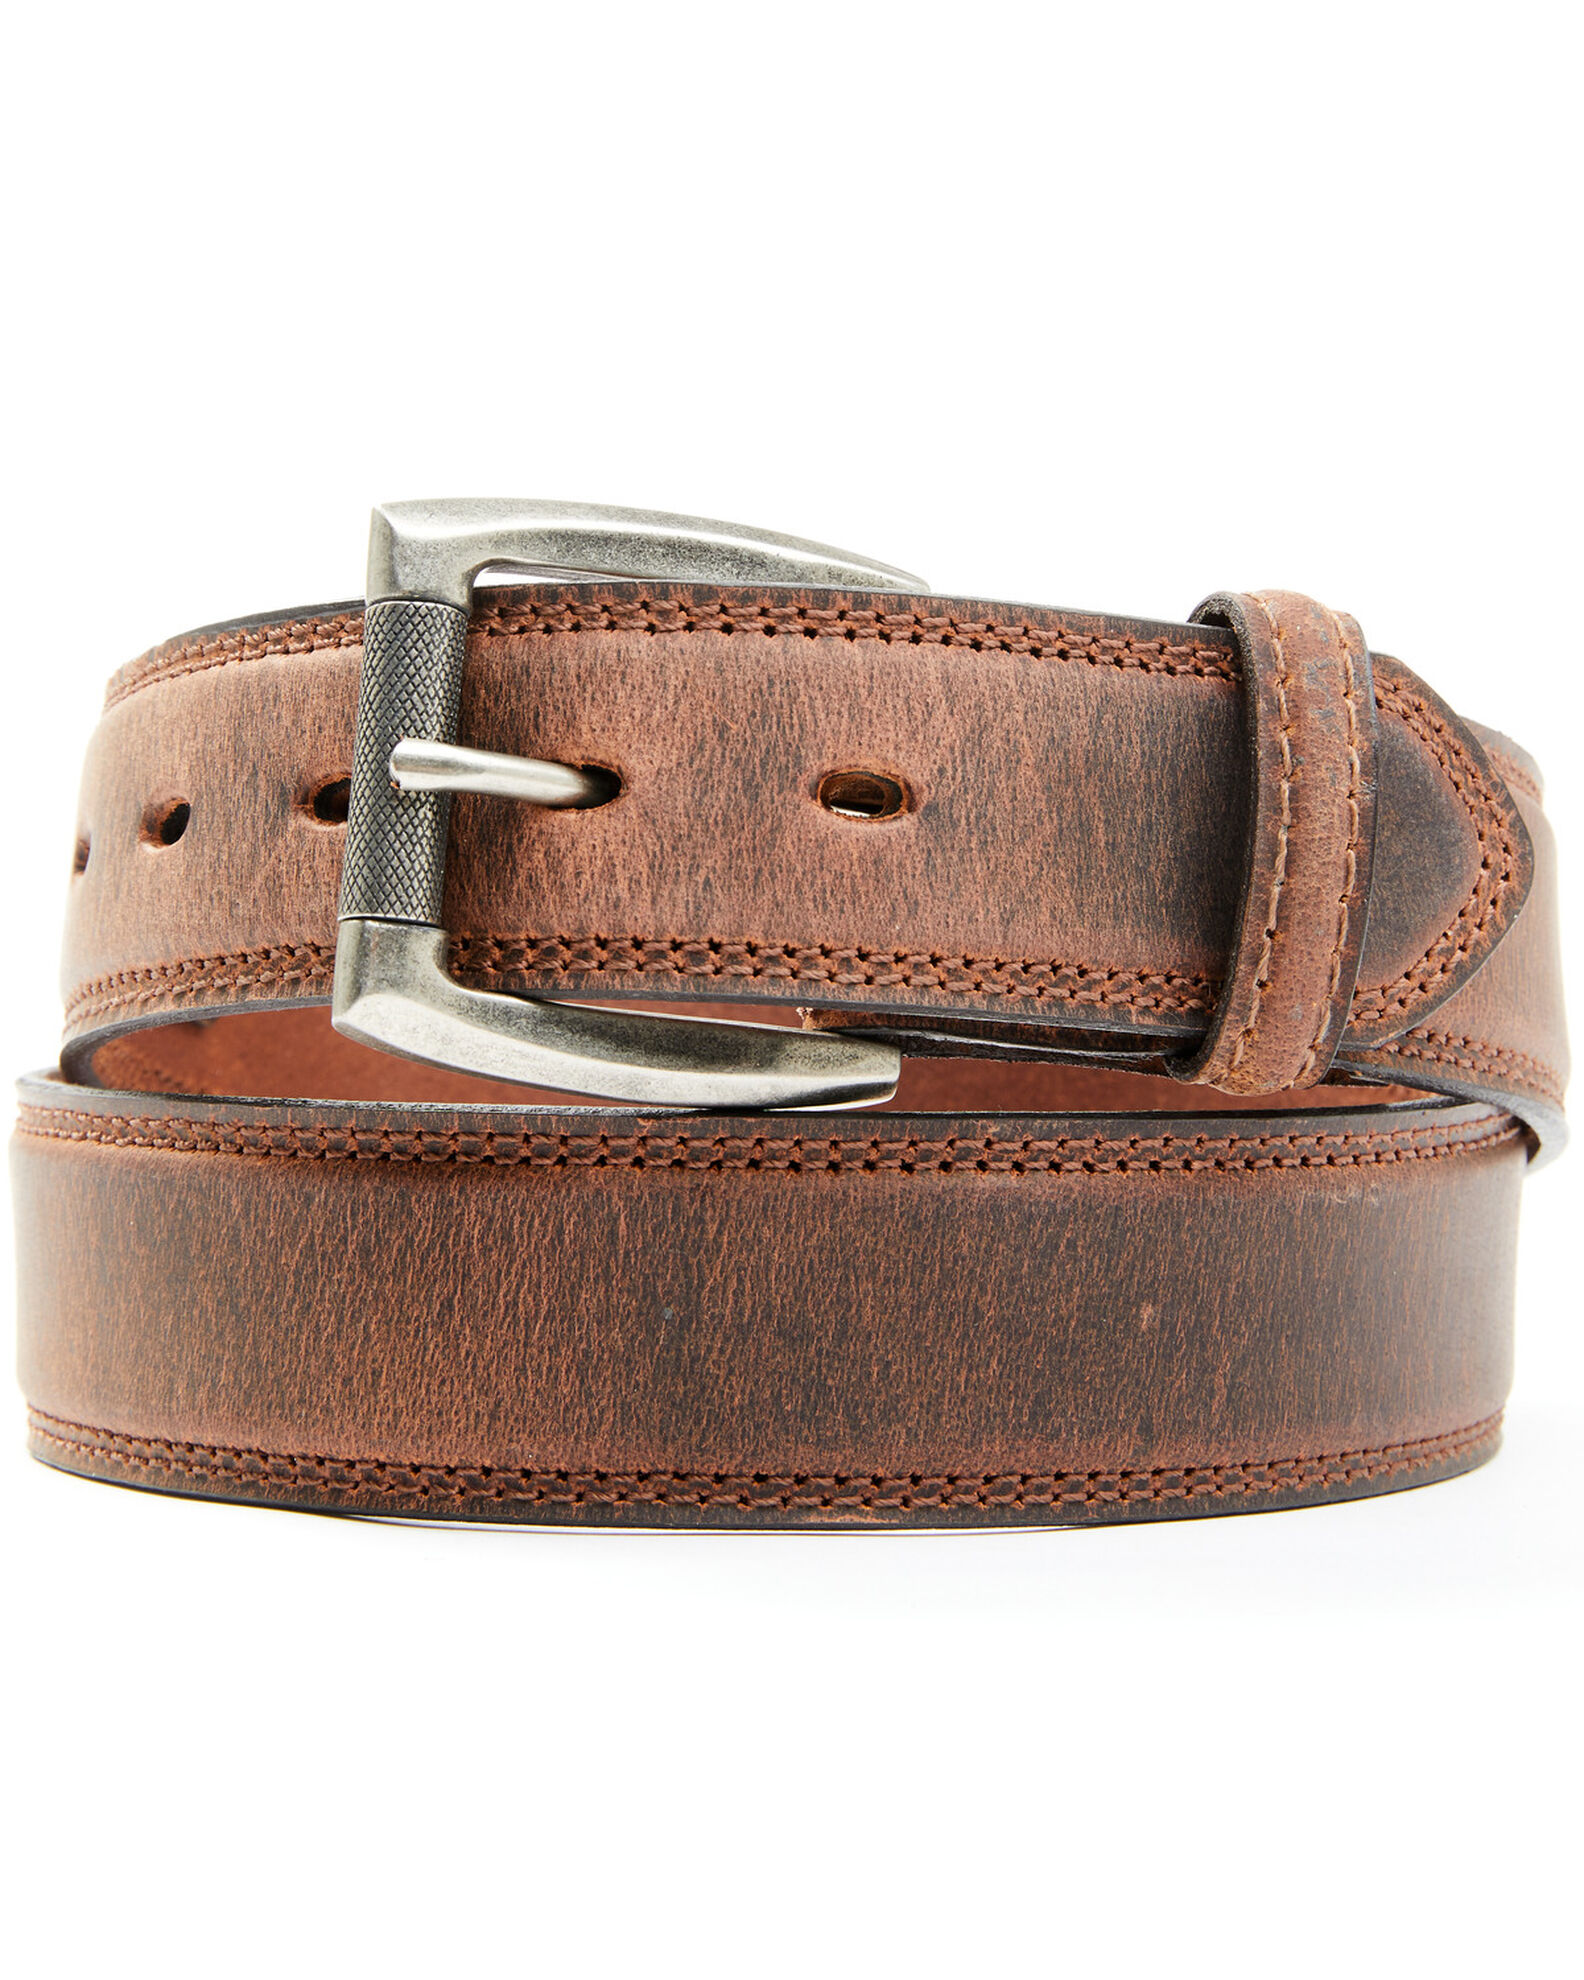 Phoenix International Buckcle Leather Mens Belt